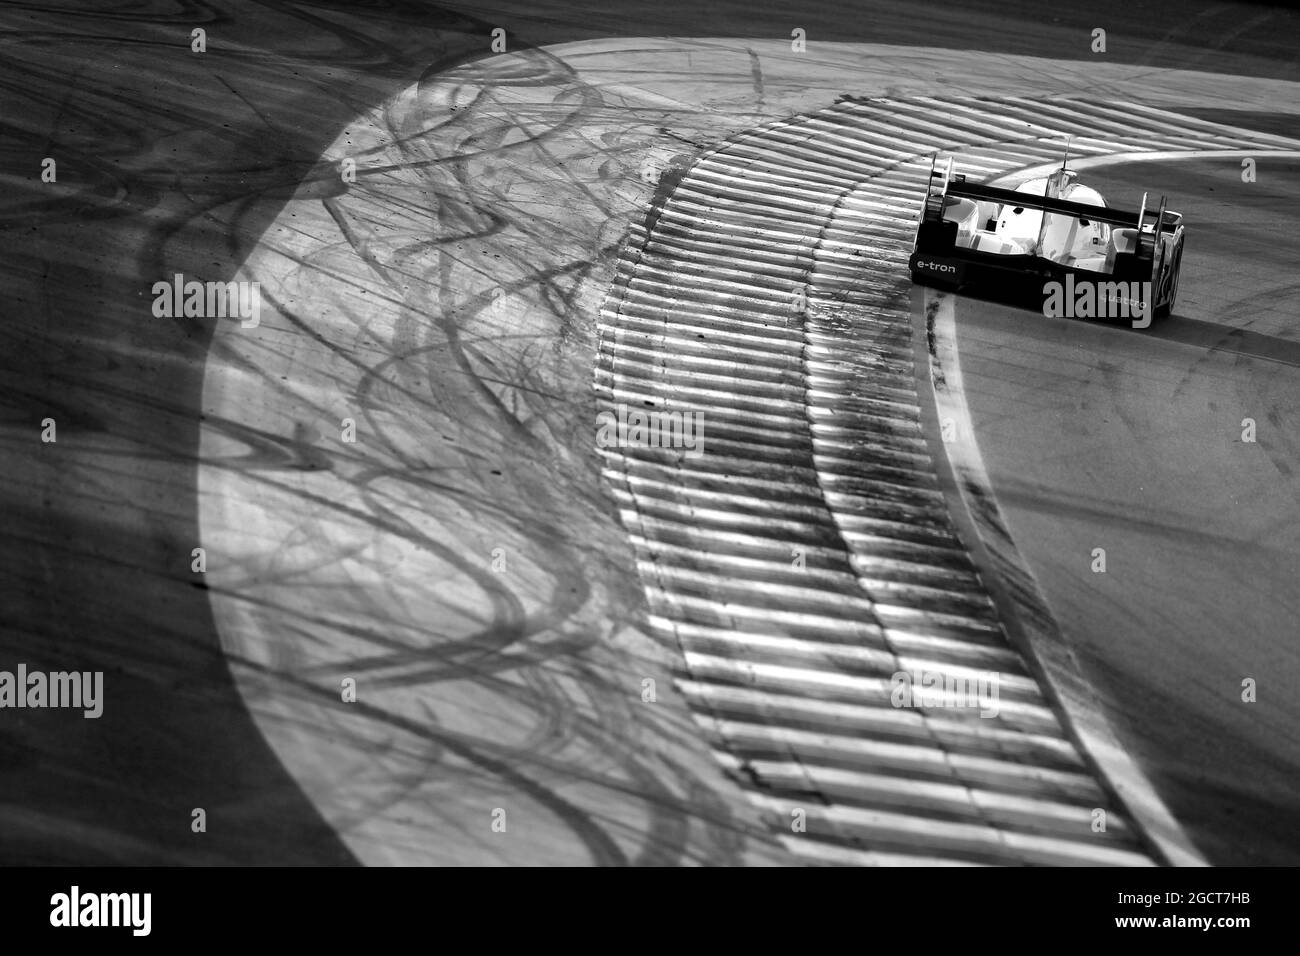 Tom Kristensen (DEN) / Loic Duval (FRA) / Allan McNish (GBR) Audi Sport Team Joest, Audi R18 e-tron quattro. Championnat du monde d'endurance FIA, Round 4, Dimanche 1er septembre 2013. Sao Paulo, Brésil. Banque D'Images